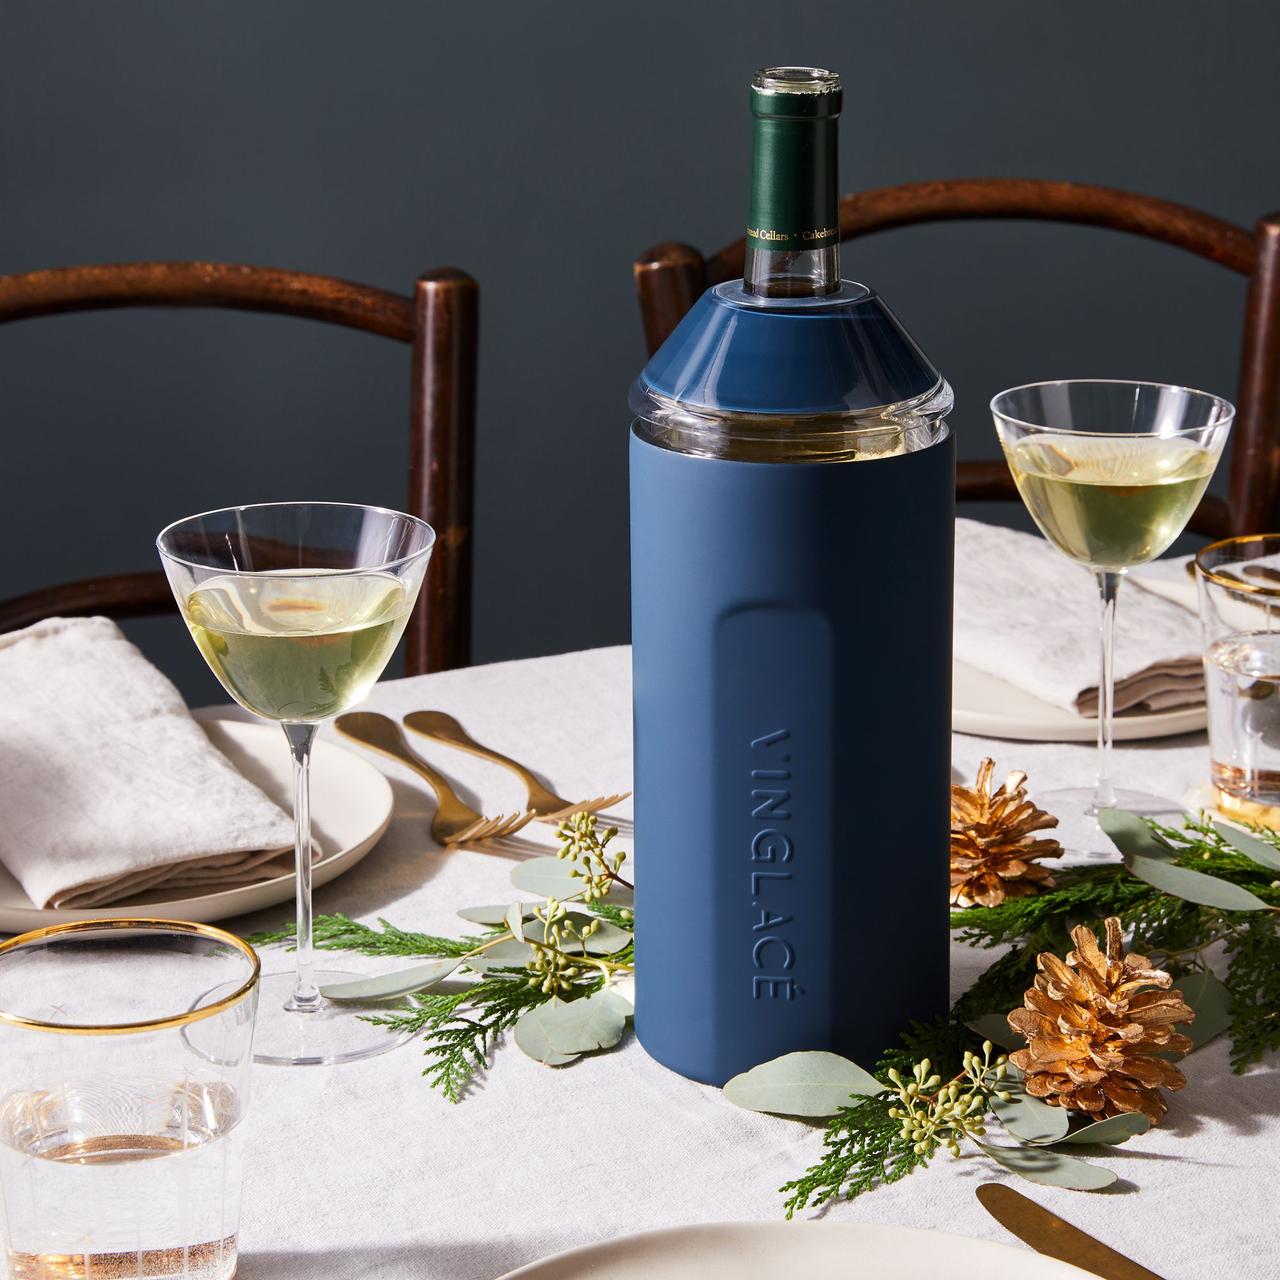 Элегантный стол с бутылкой вина в темно-синем винном холодильнике